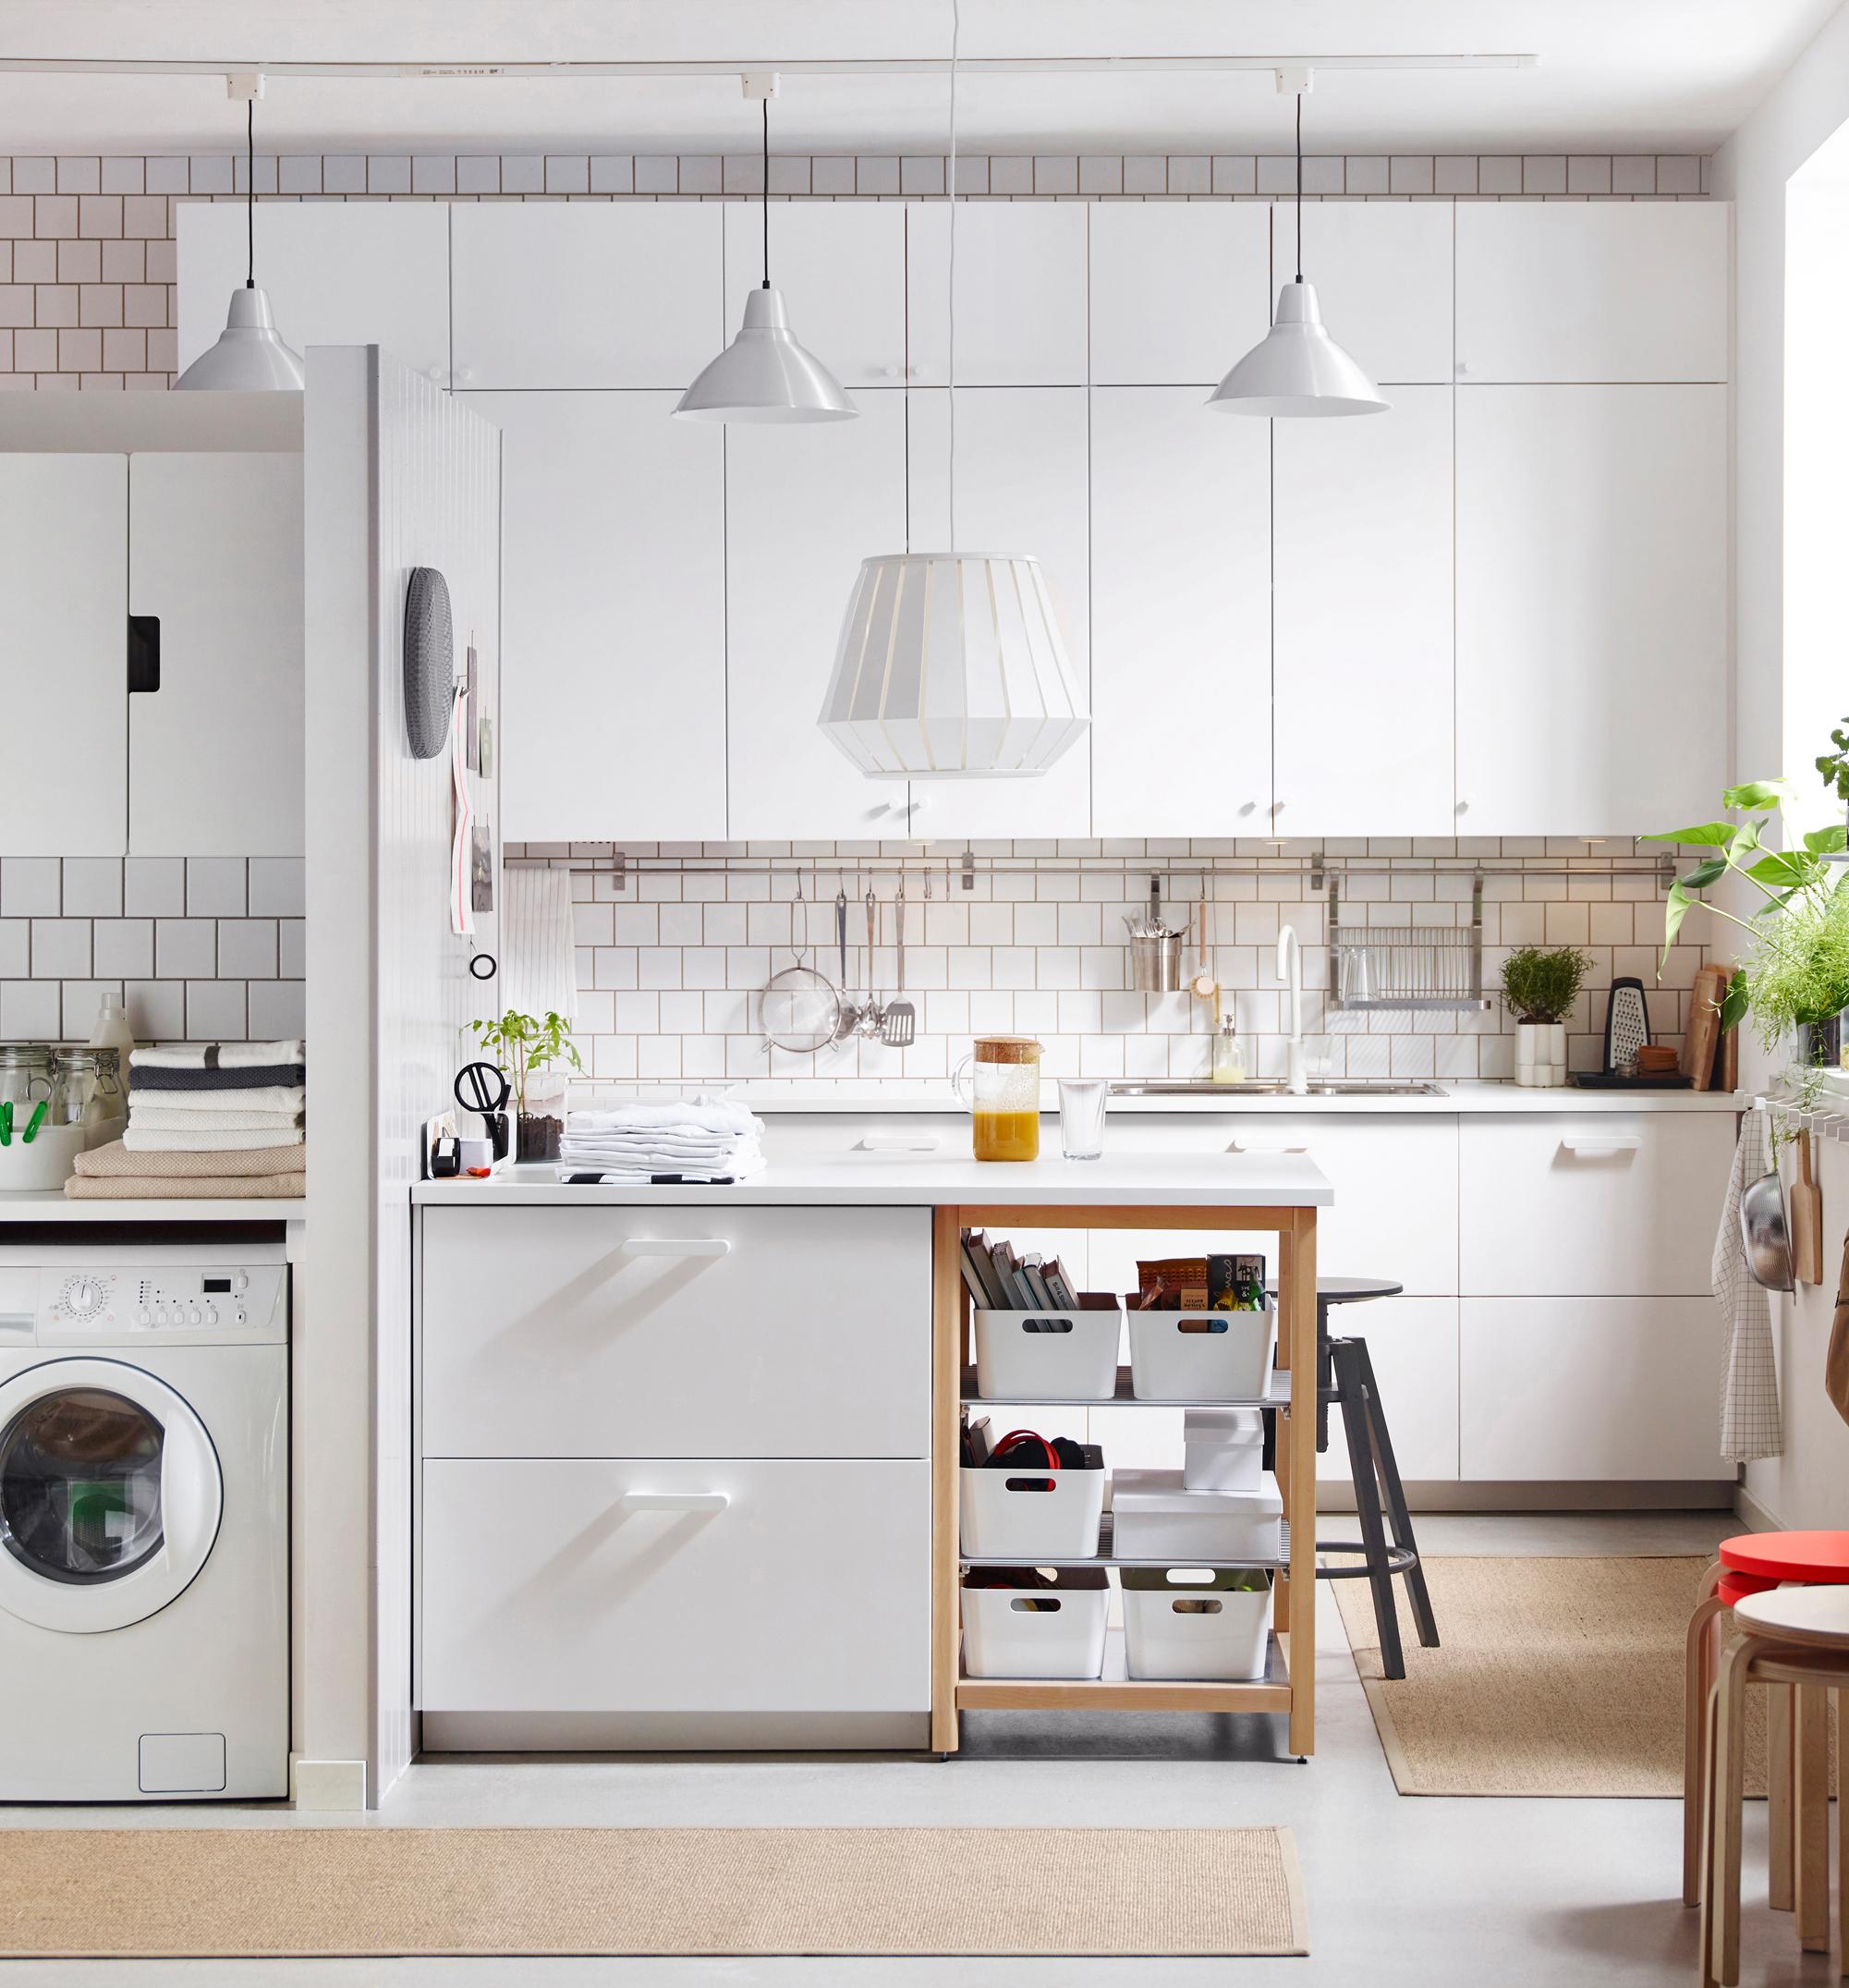 Kleine Küche optimal nutzen #küche #weißeküche #miniküche #zimmergestaltung ©Inter IKEA Systems B.V.